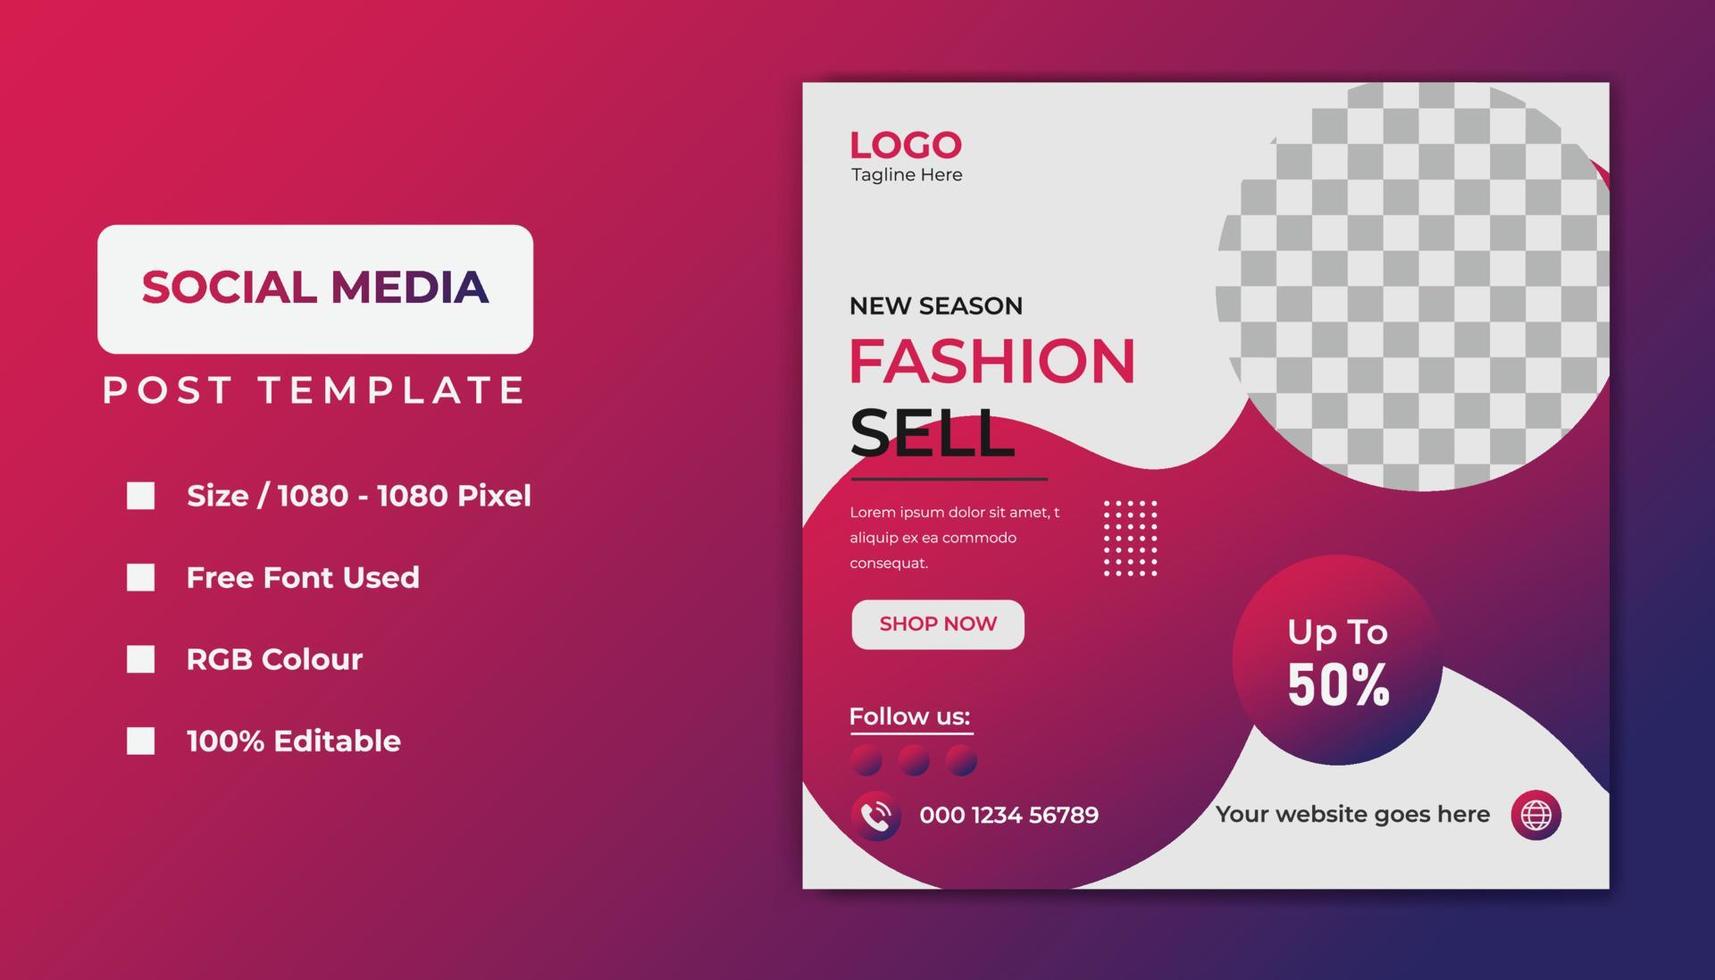 Fashion social media template banner design. vector